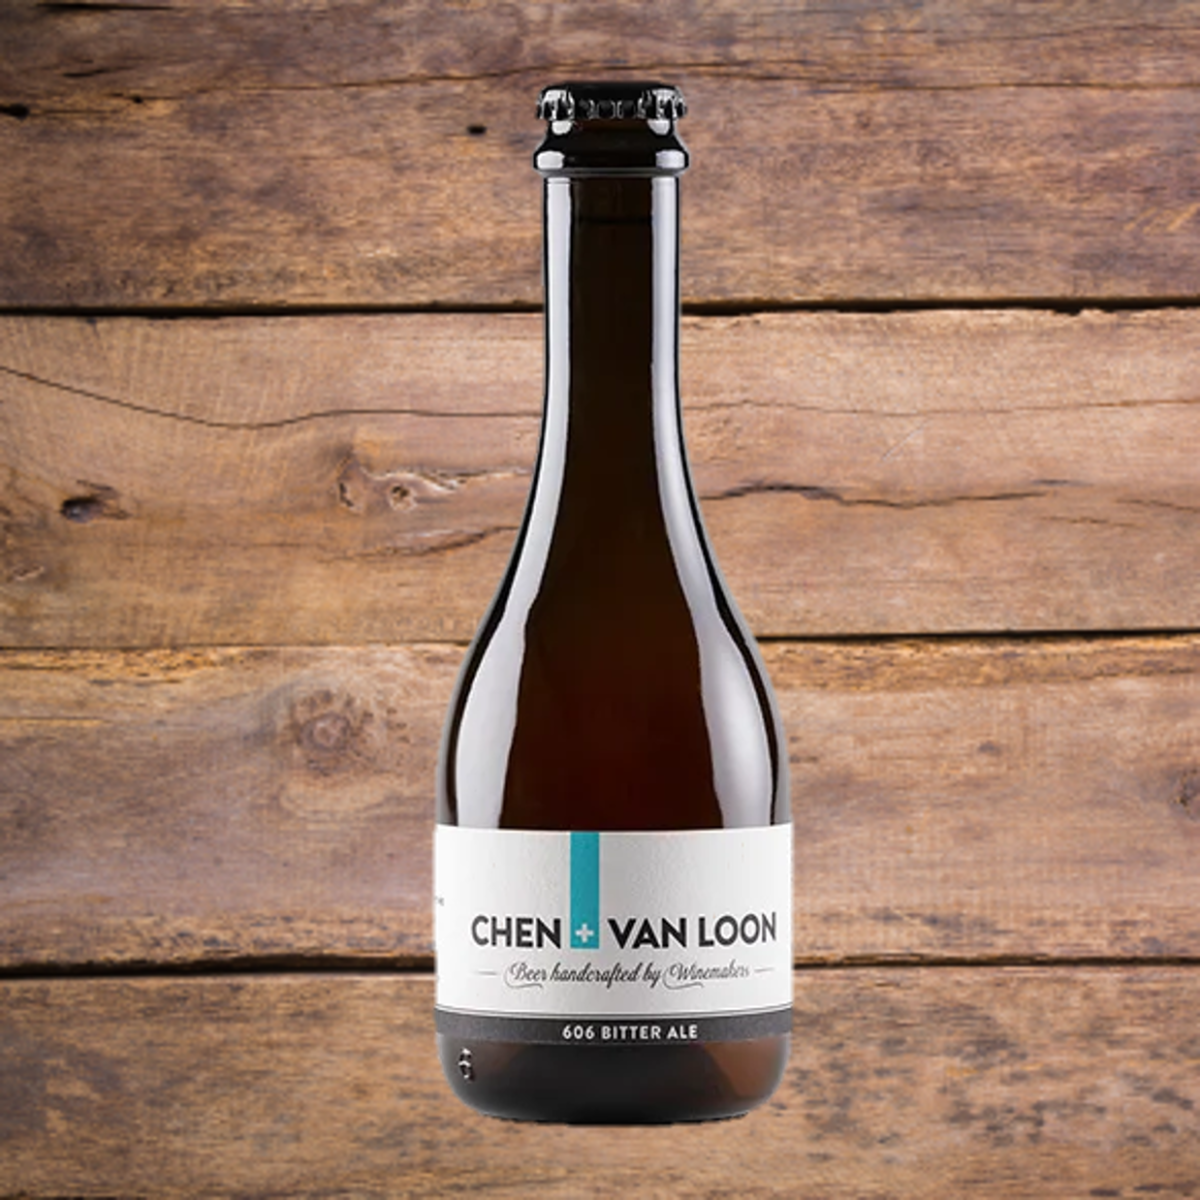 Chen van Loon 606 Bitter Ale